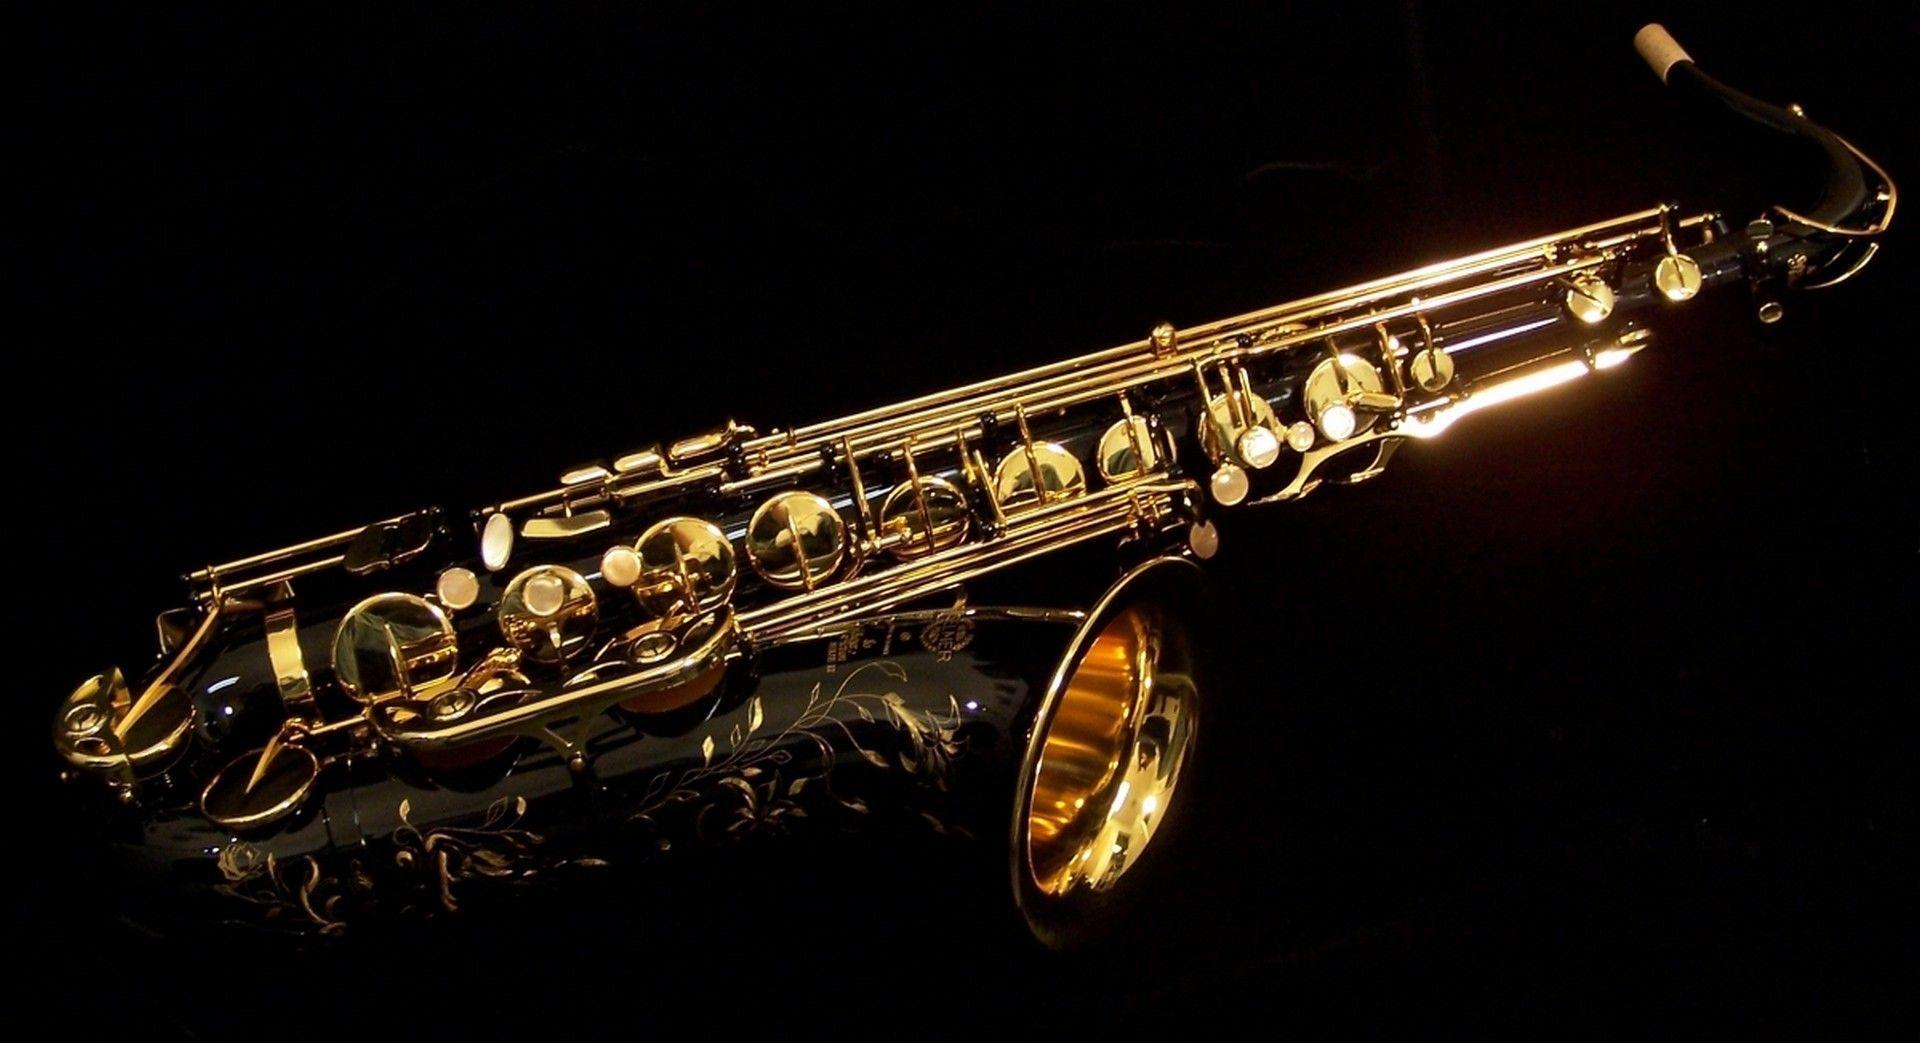 HD Saxophone wallpaper. Saxophone wallpaper HD